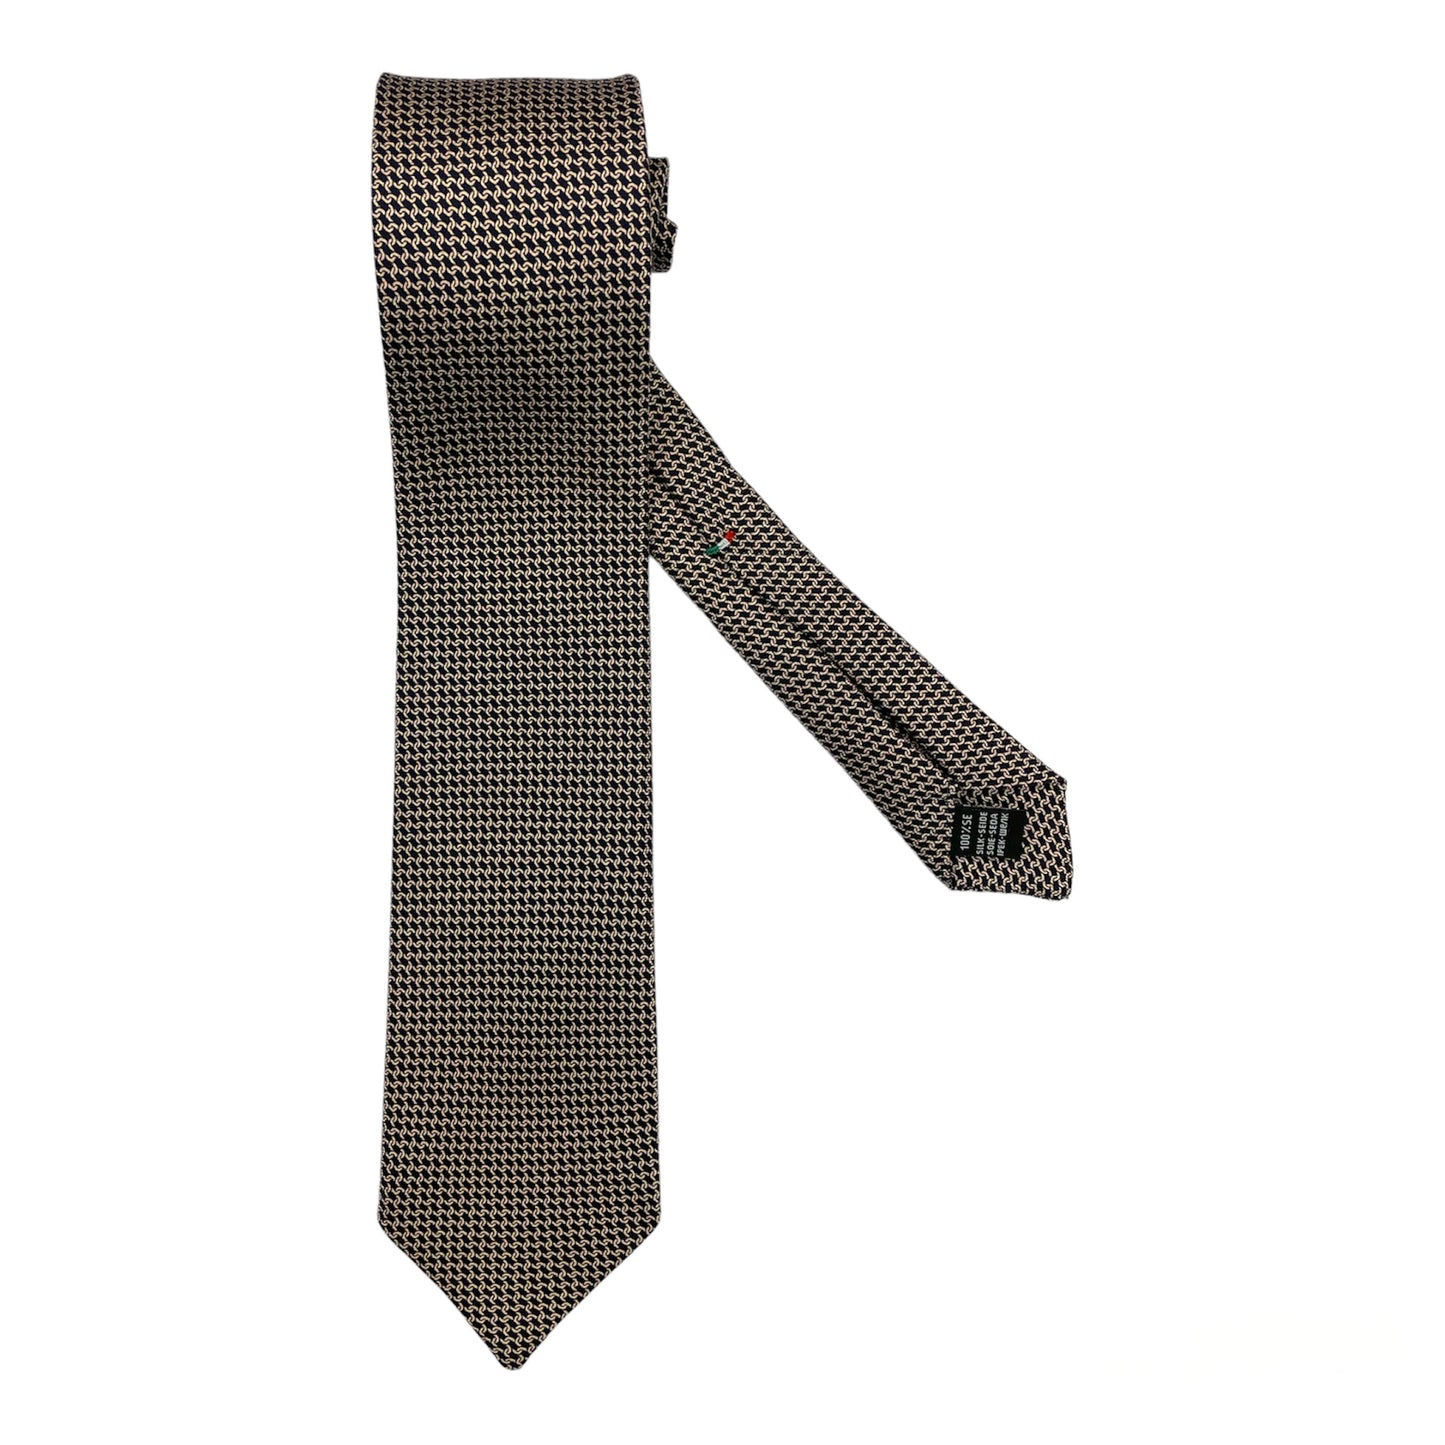 Dark blue silk tie with light pink chains